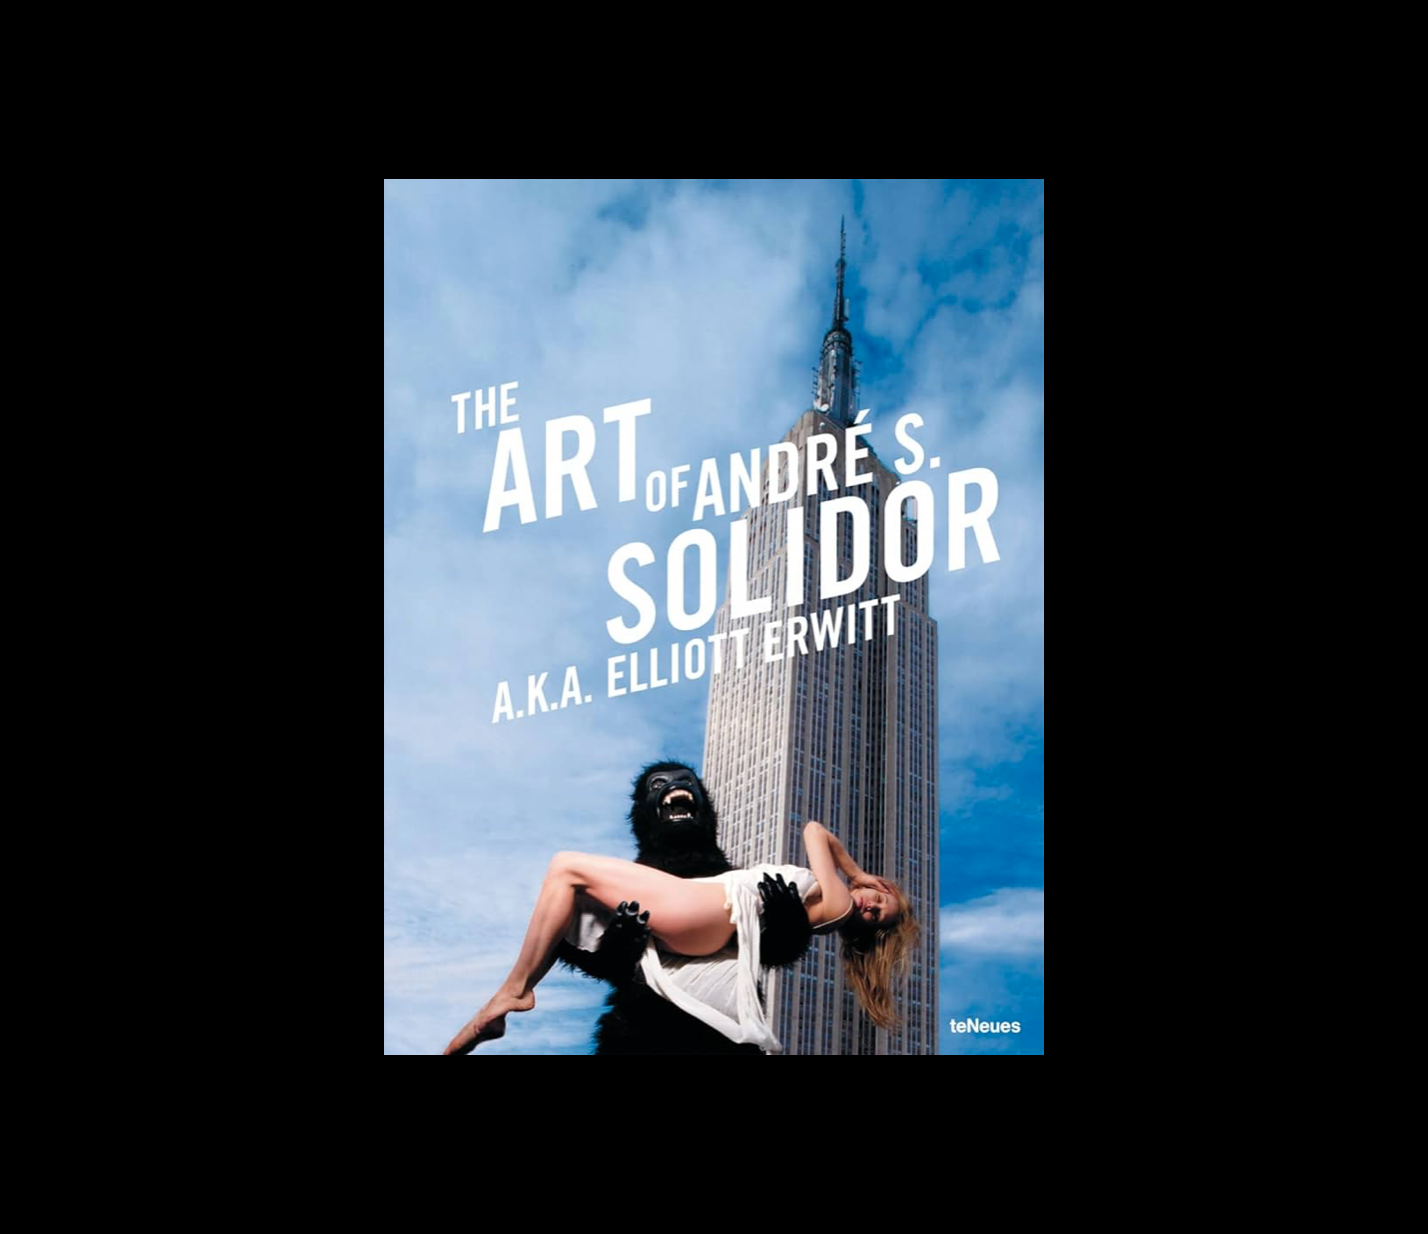 THE ART OF ANDRÈ S. SOLIDOR - Eliott Erwitt